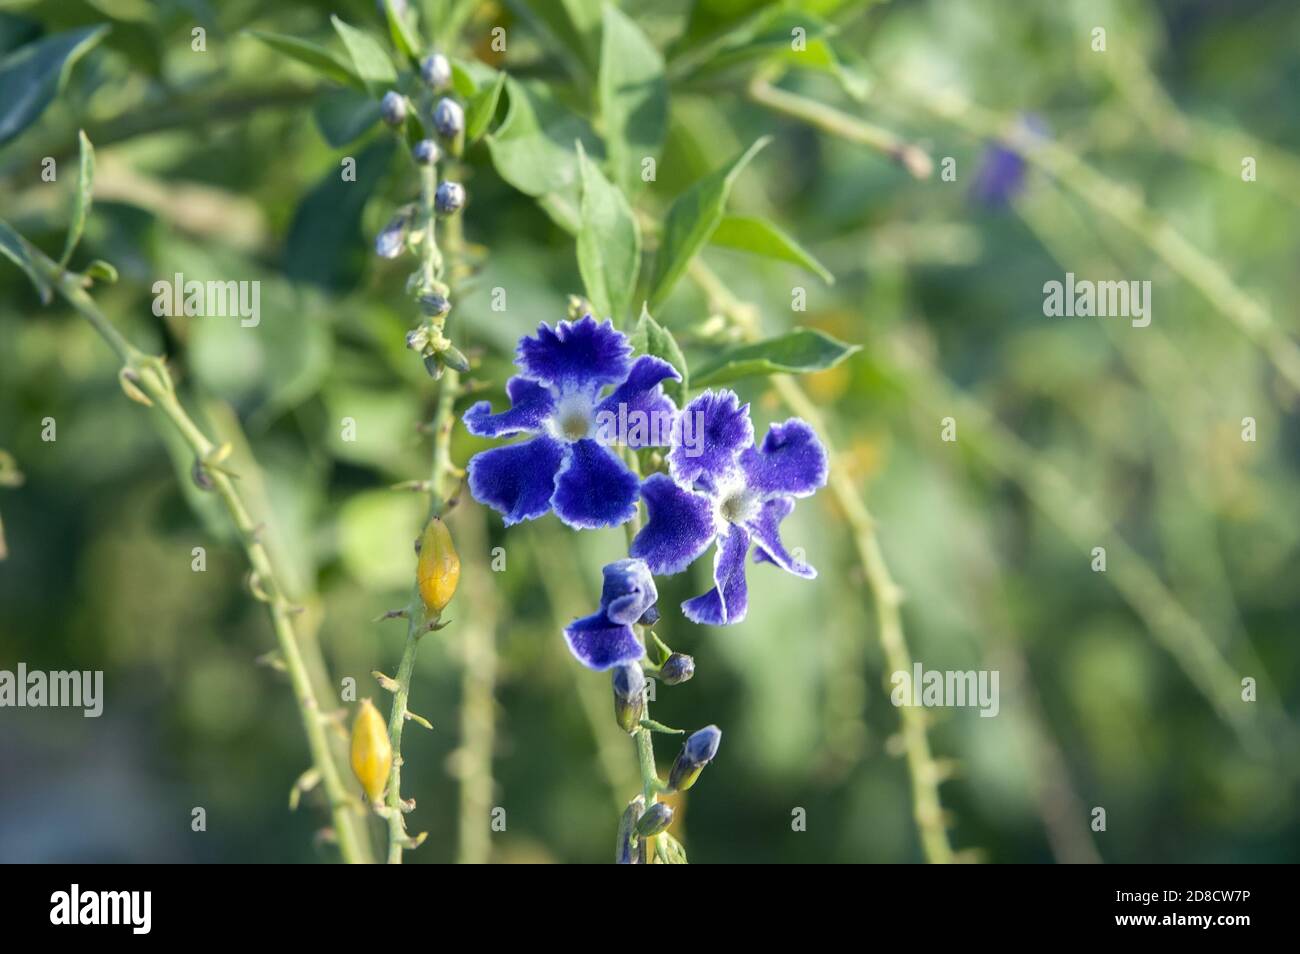 Piccolo fiore blu su sfondo verde. Kleine blaue Blume auf einem grünen Hintergrund. Pequeña flor azul sobre un fondo verde. Foto Stock